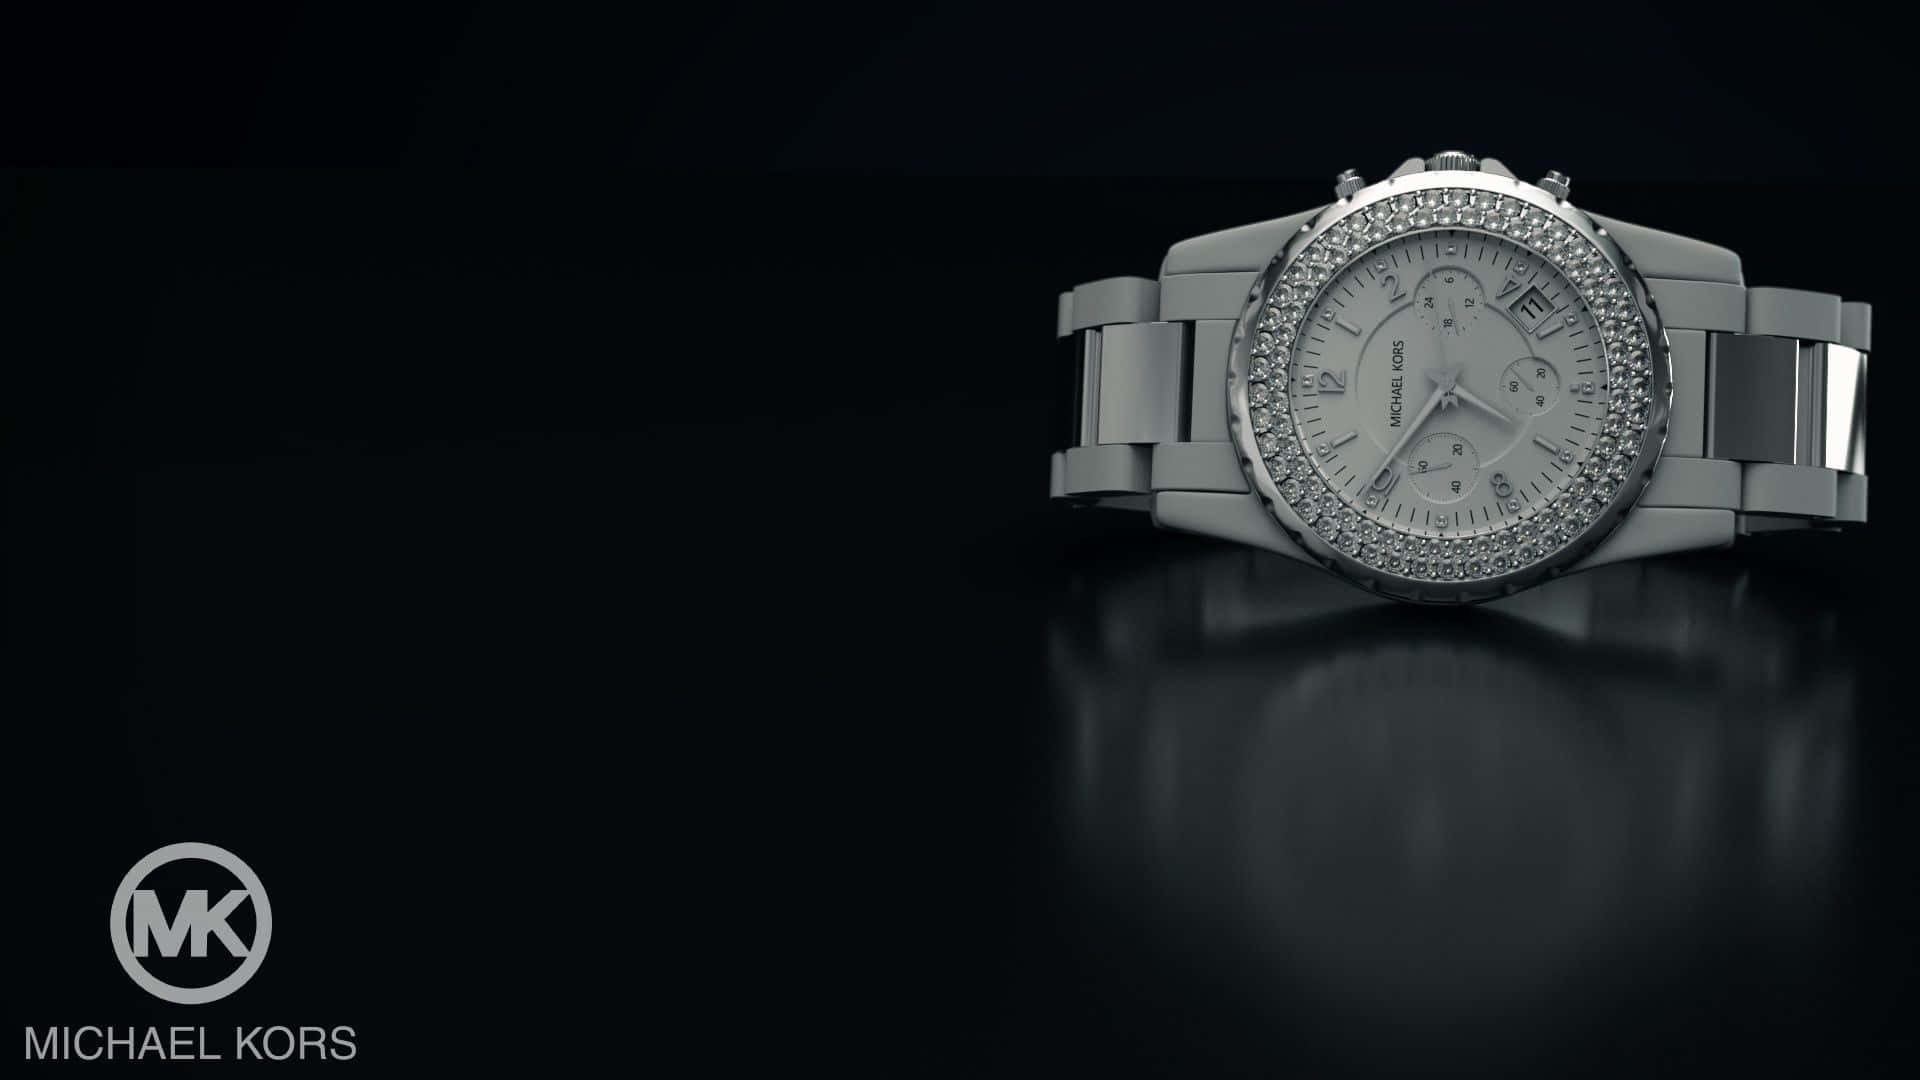 Michaelkors Uhren - Eine Silberne Uhr Mit Diamanten